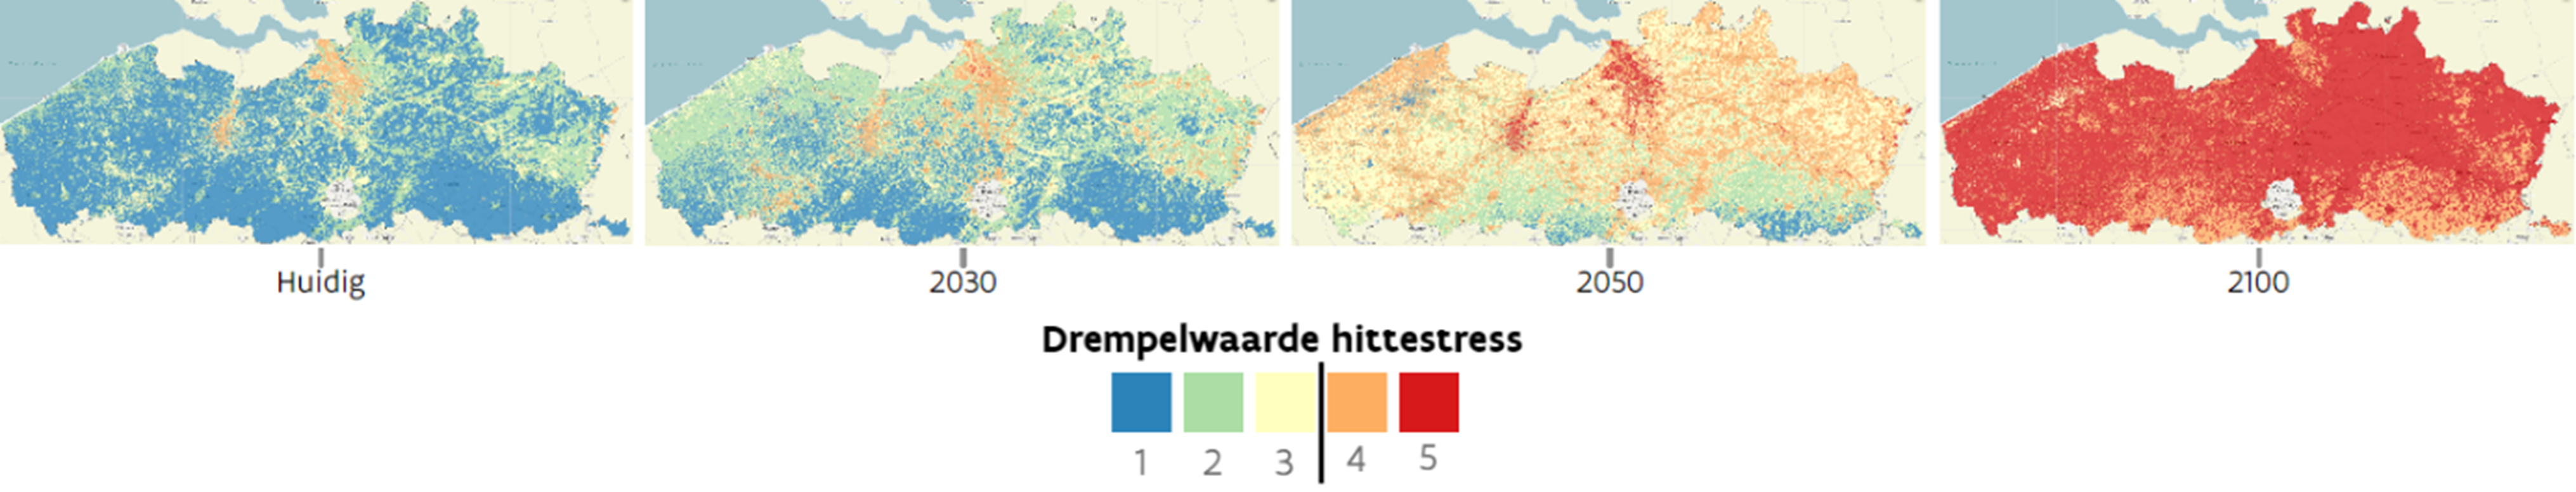 Locaties in Vlaanderen die uitstijgen boven de drempelwaardes van gevoelstemperatuur met belangrijke gezondheidsimpact (niveau 4 en 5) onder huidig klimaat en bij een hoog-impact klimaatscenario tot 2100